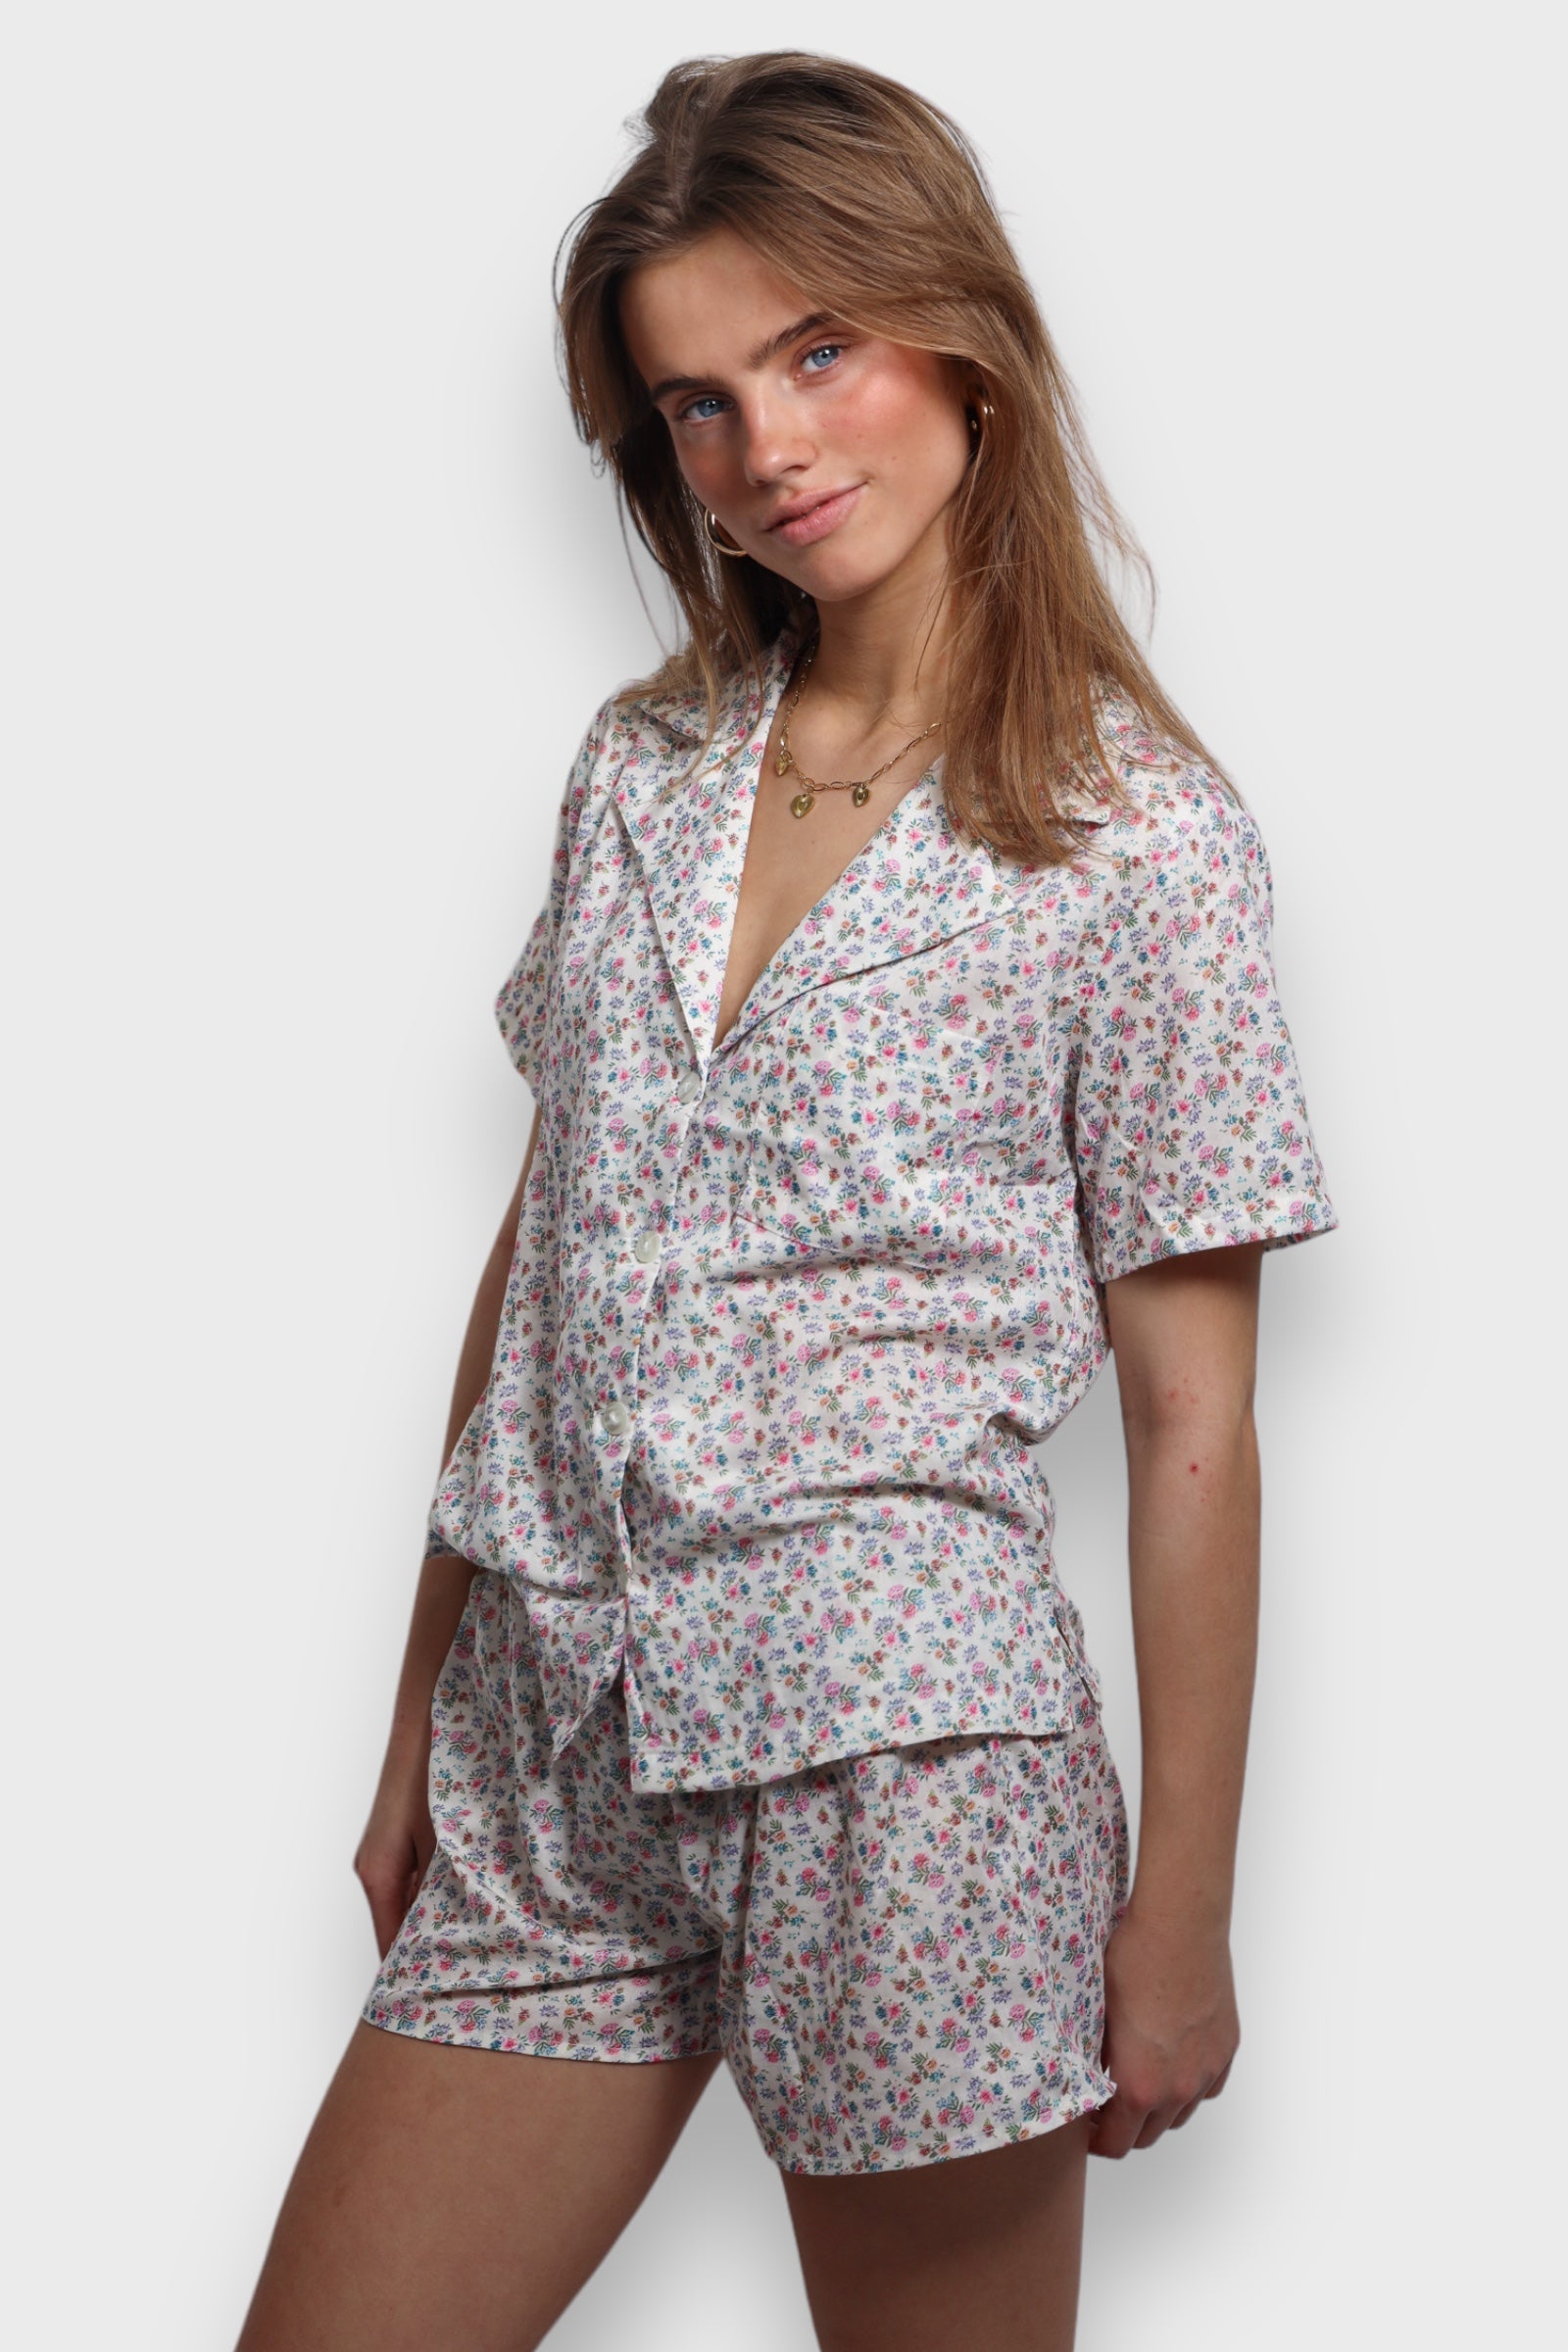 "Wildflower" pajamas